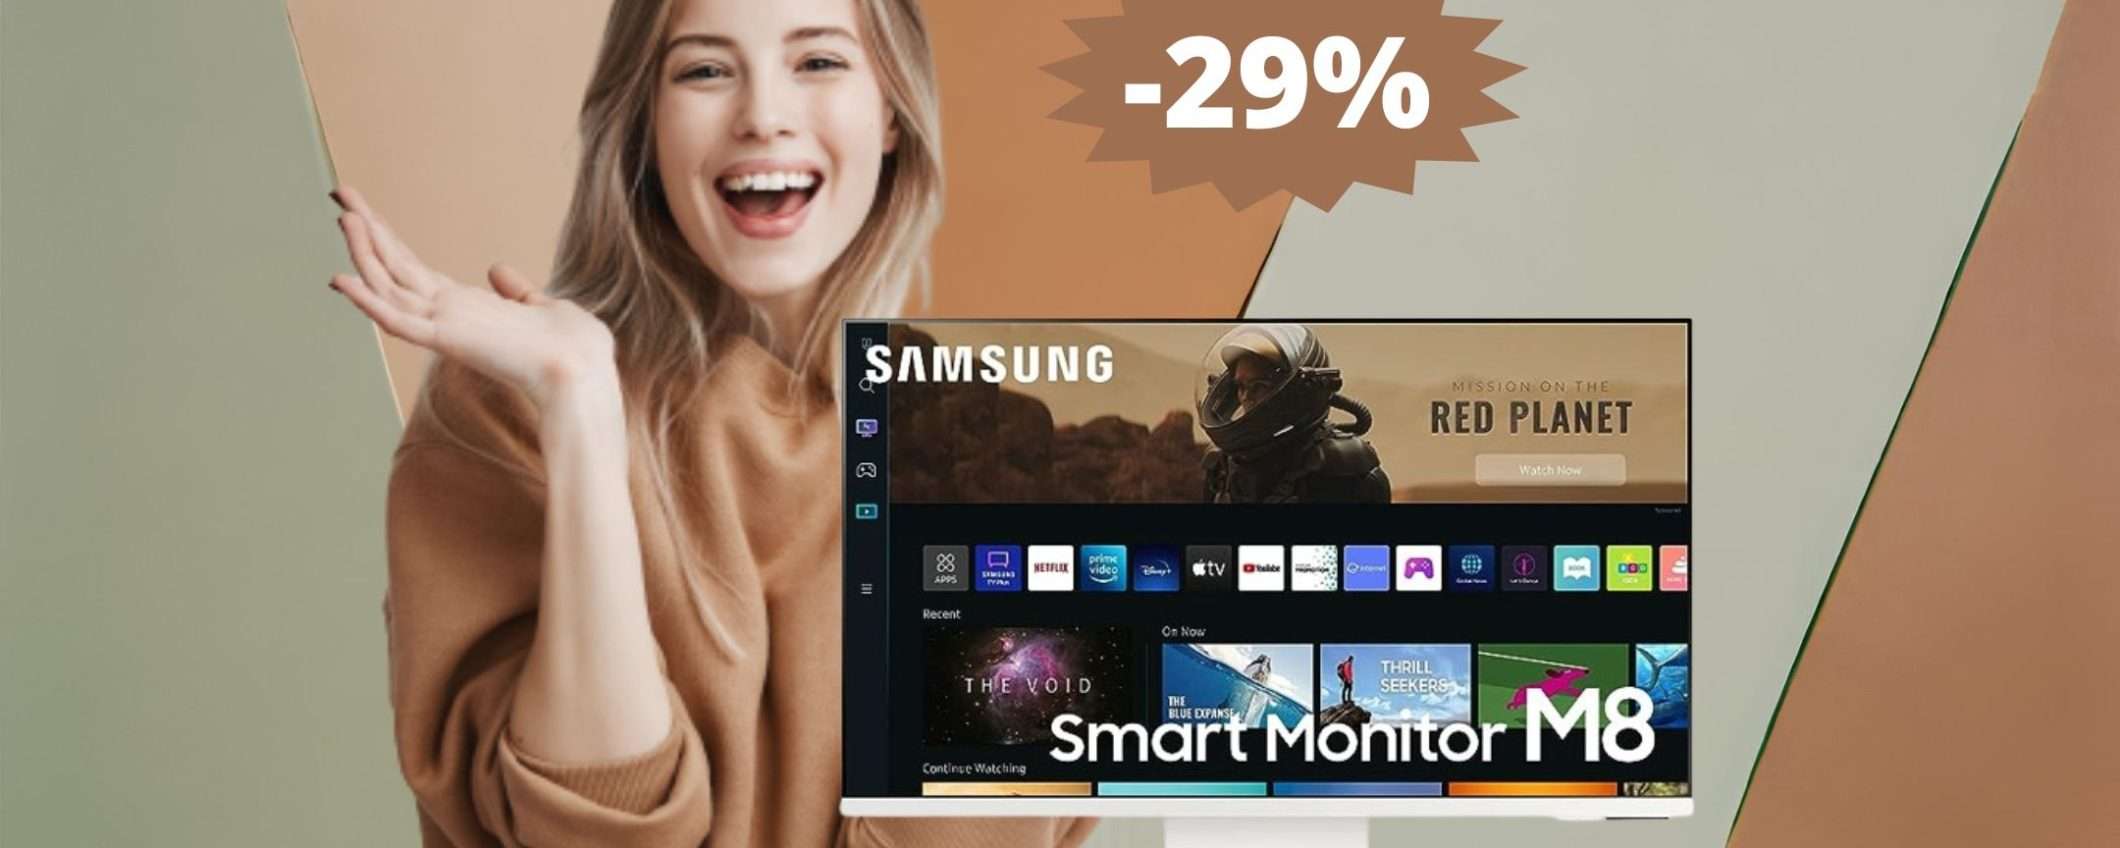 Samsung Smart Monitor M8: sconto IMBATTIBILE del 29%